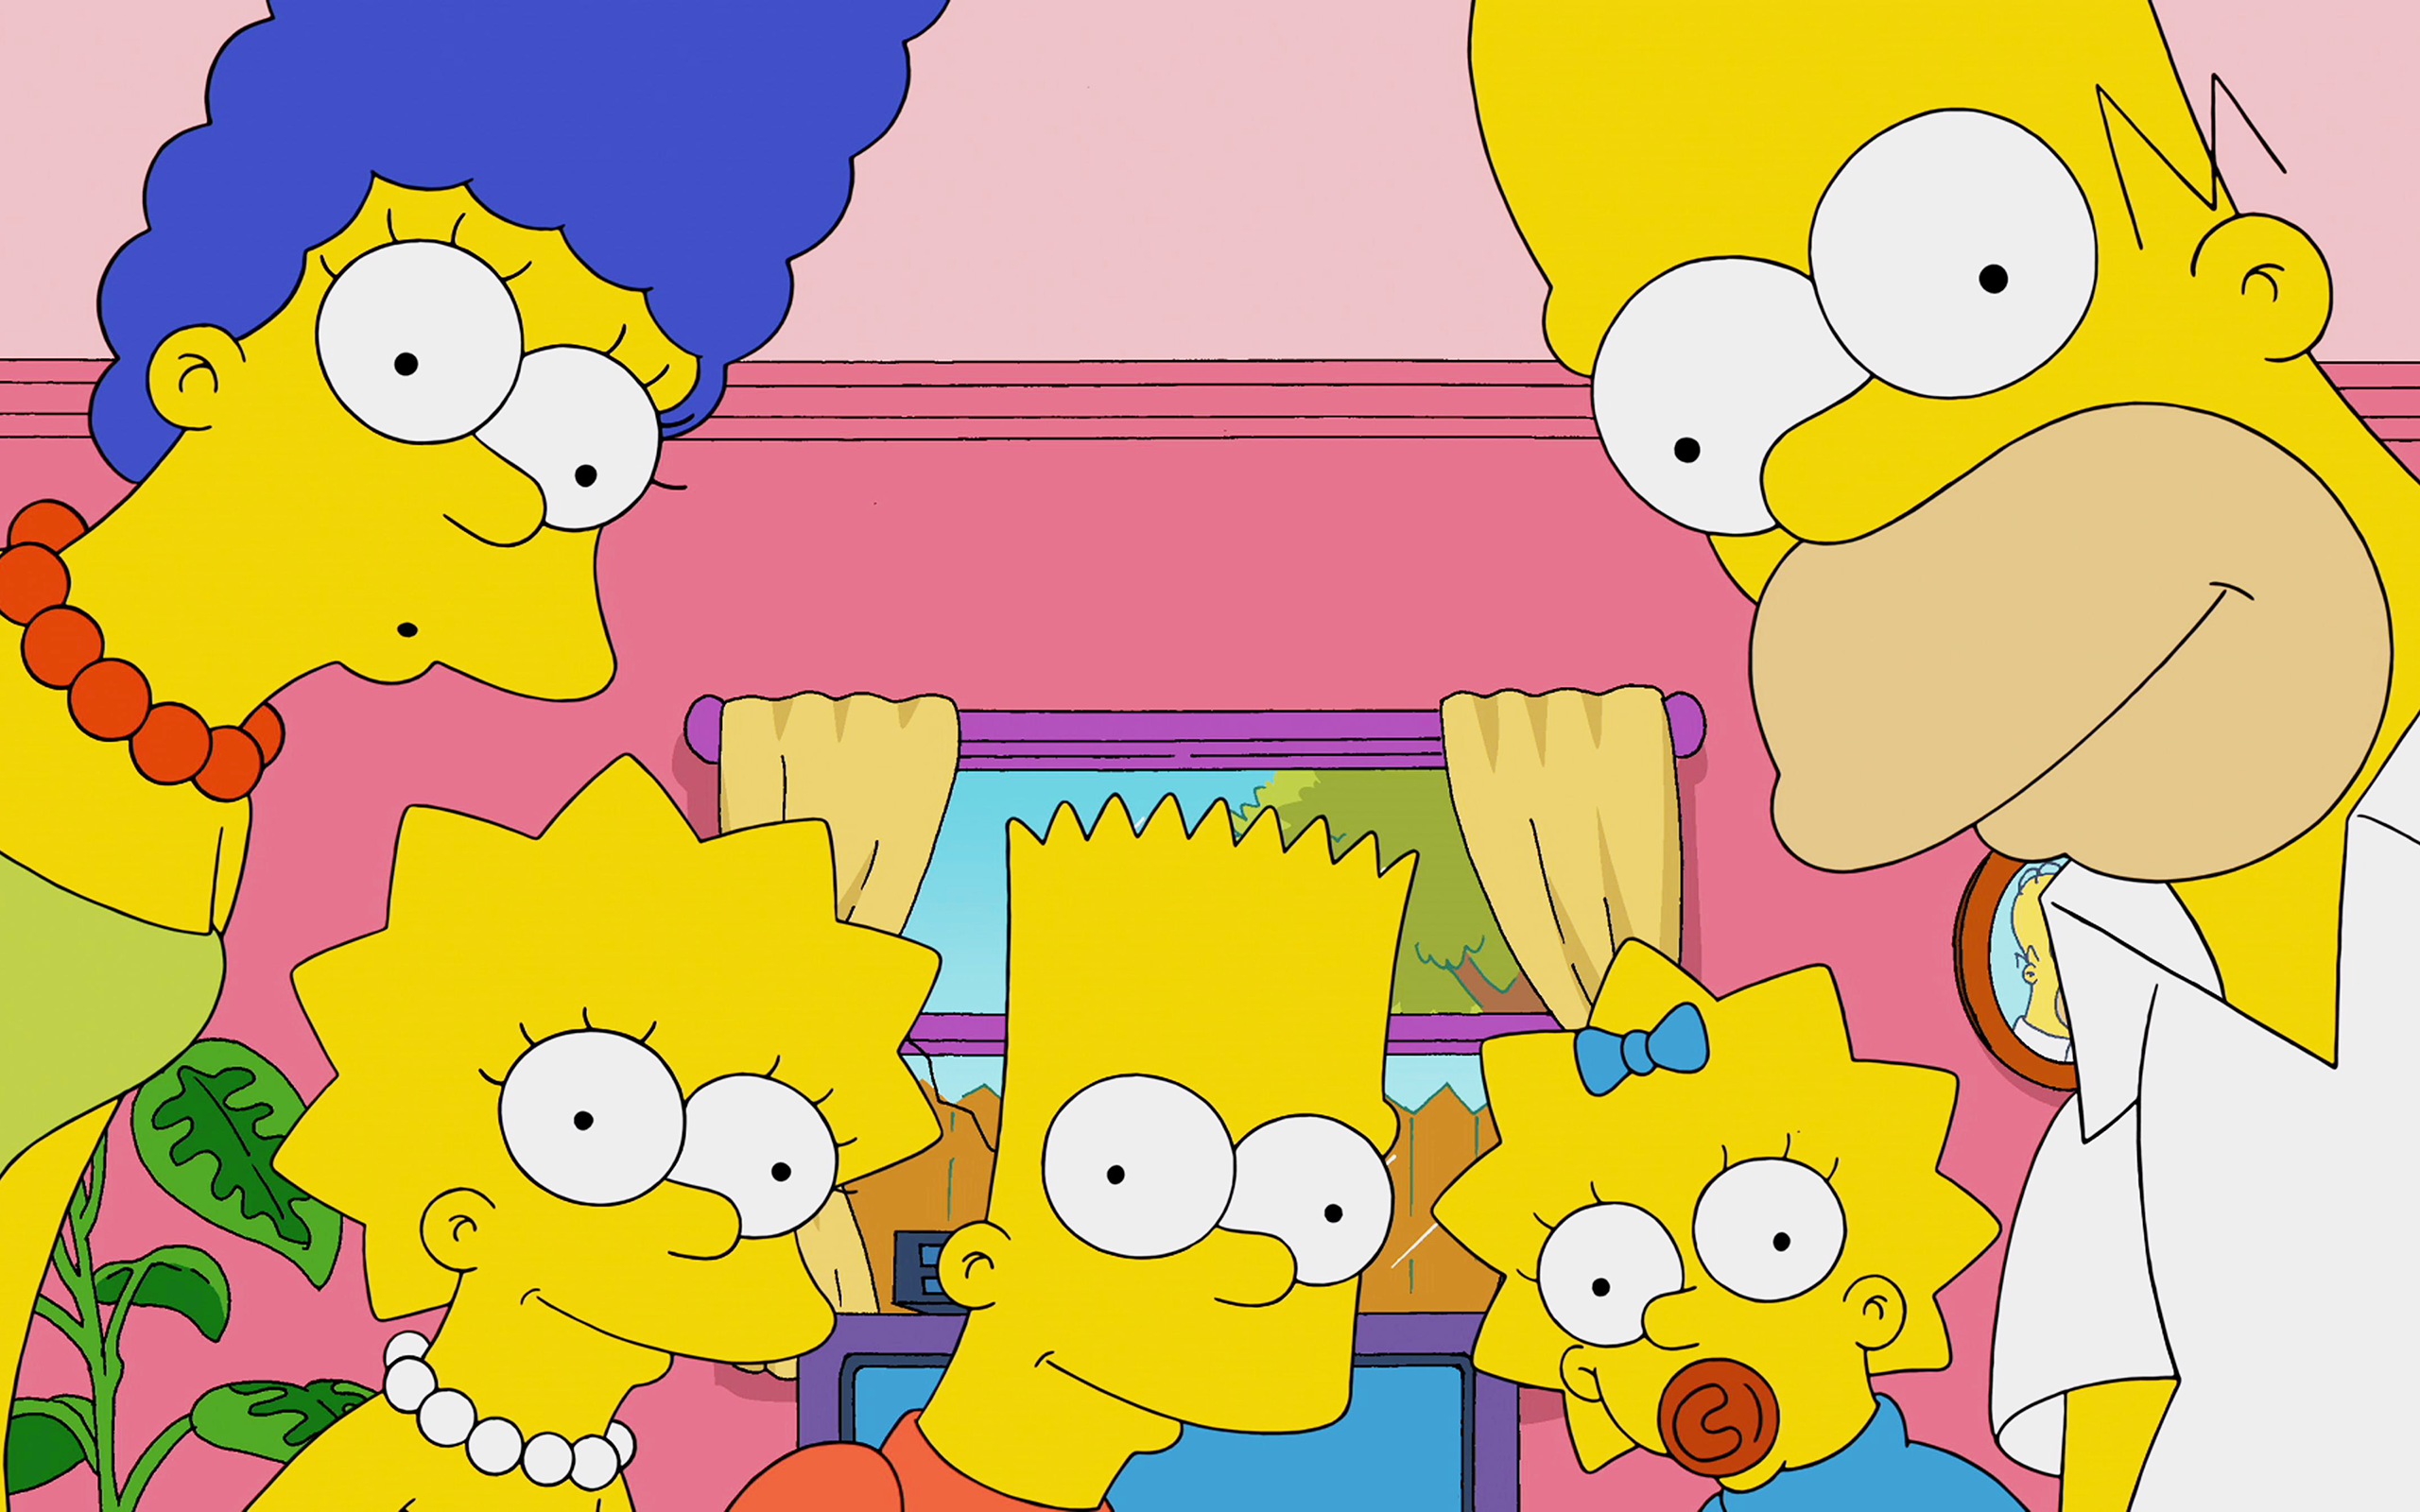 Bart Simpson Homer Simpson Lisa Simpson Maggie Simpson Marge Simpson The Simpsons 2560x1600